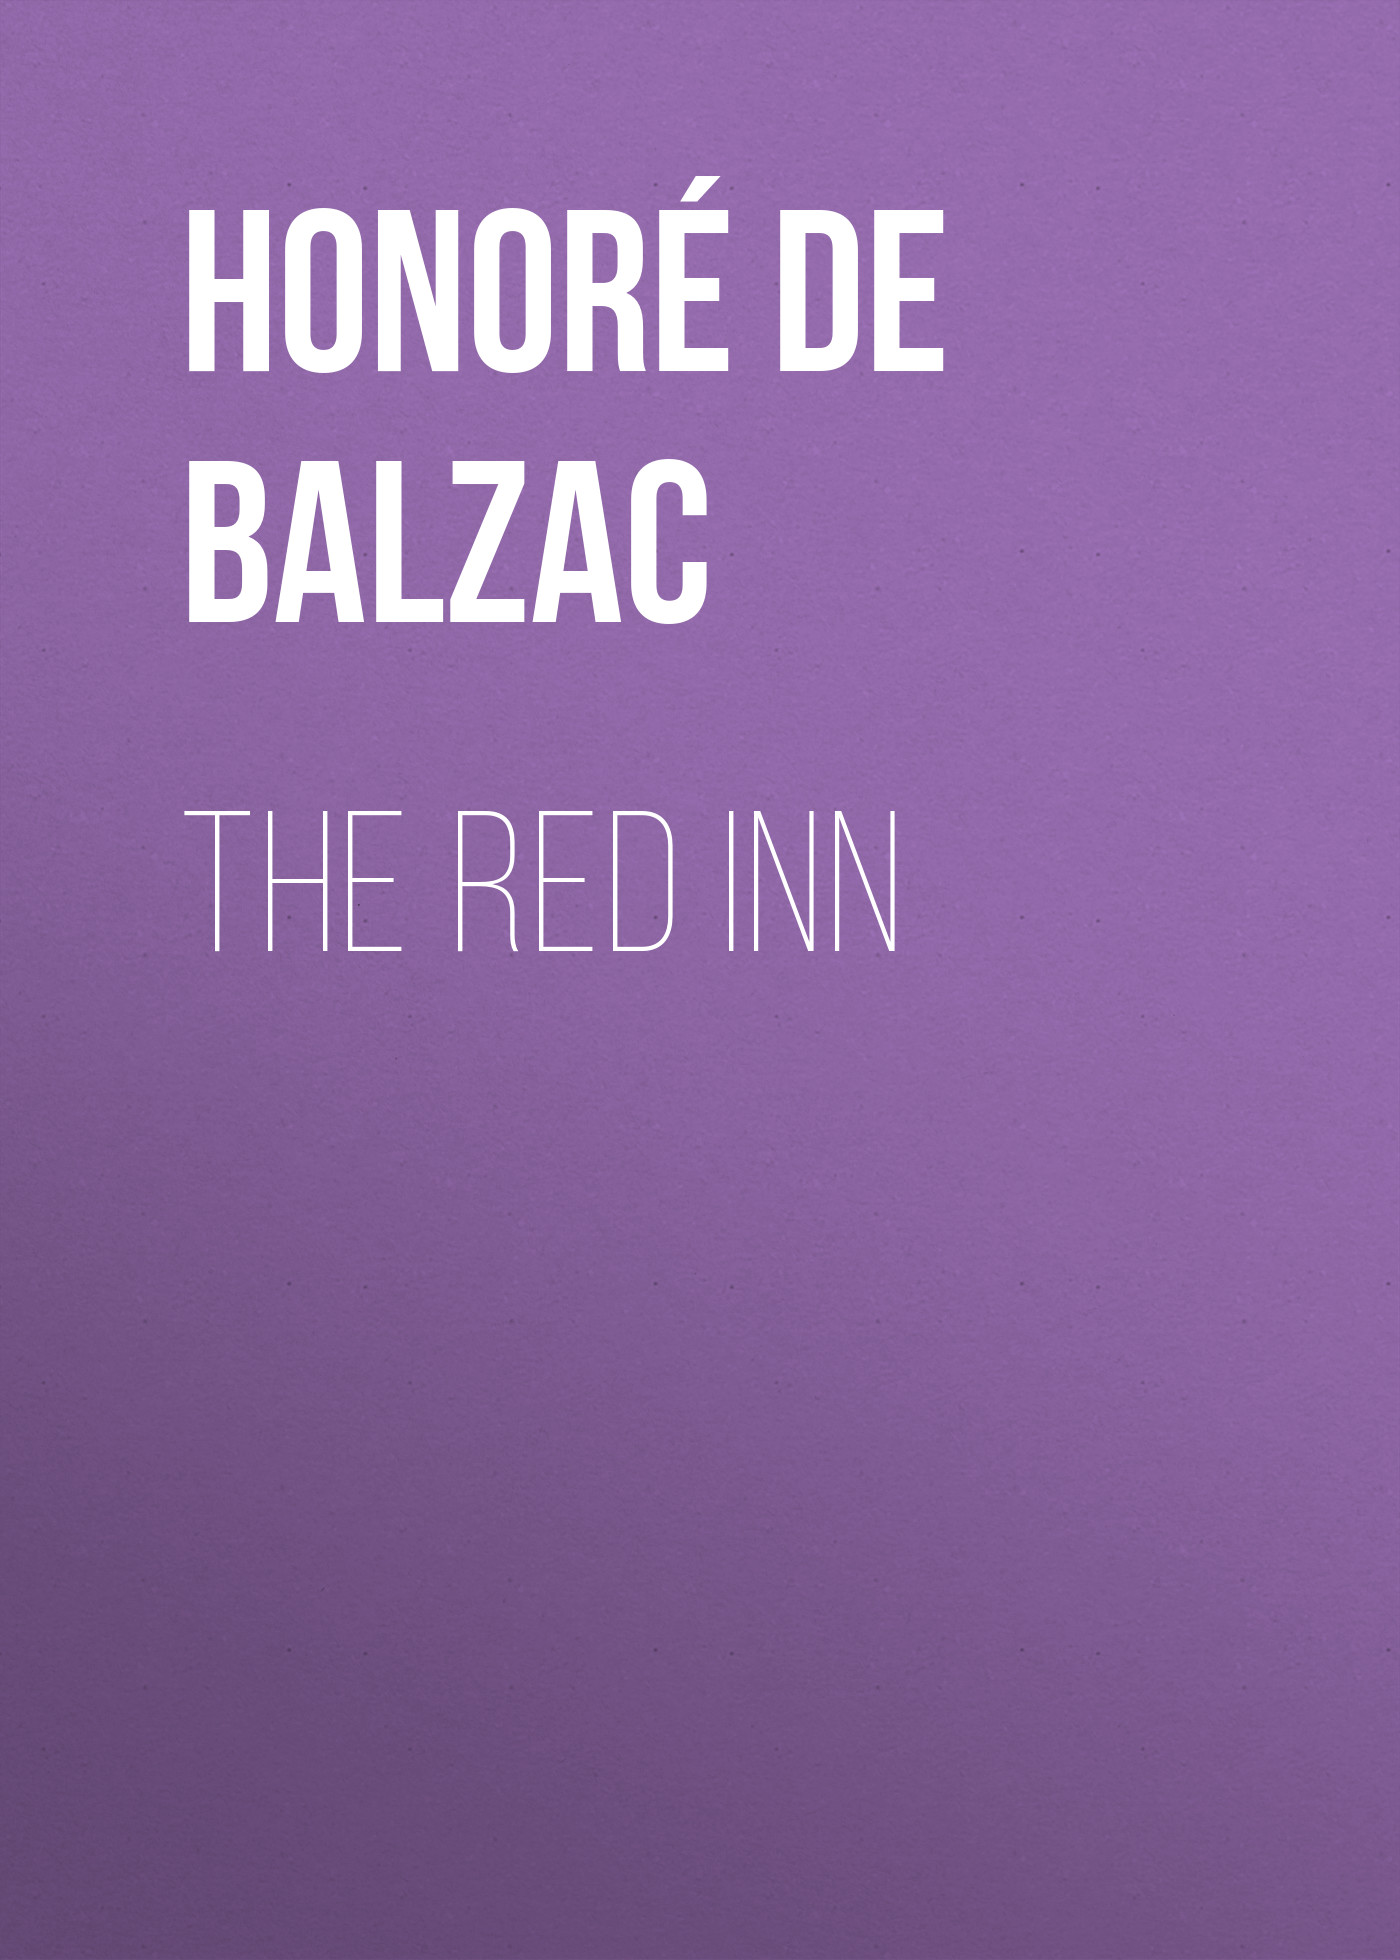 Книга The Red Inn из серии , созданная Honoré Balzac, может относится к жанру Литература 19 века, Зарубежная старинная литература, Зарубежная классика. Стоимость электронной книги The Red Inn с идентификатором 25020347 составляет 0 руб.